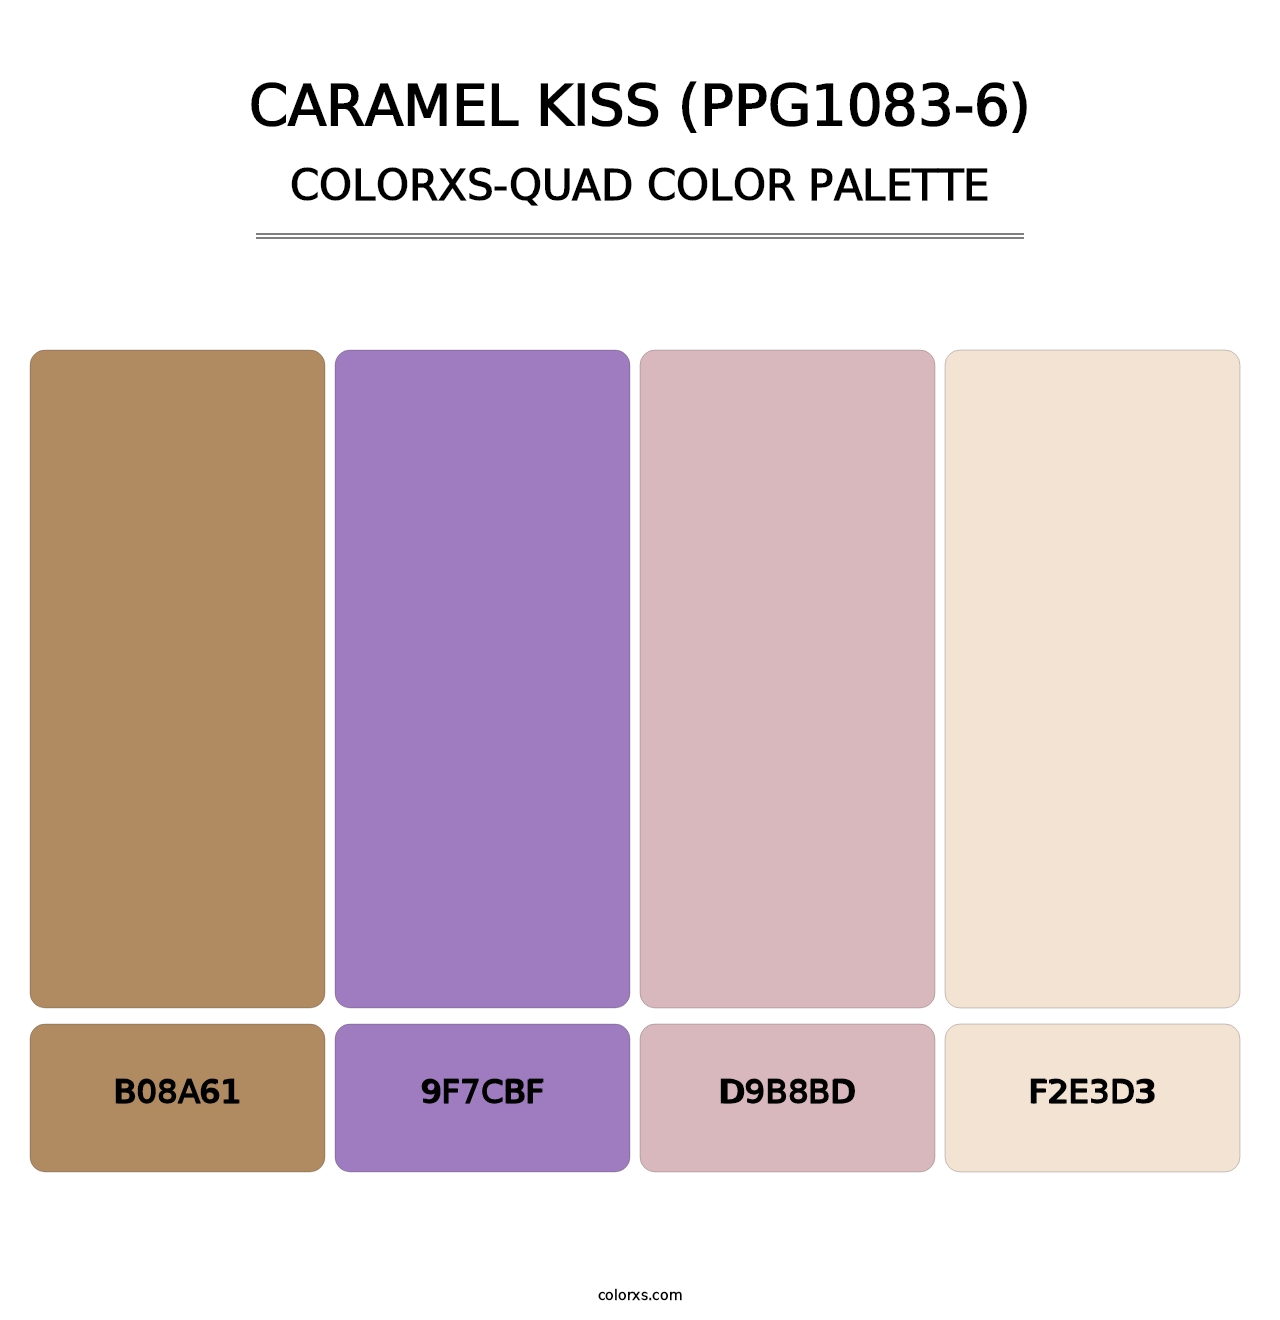 Caramel Kiss (PPG1083-6) - Colorxs Quad Palette